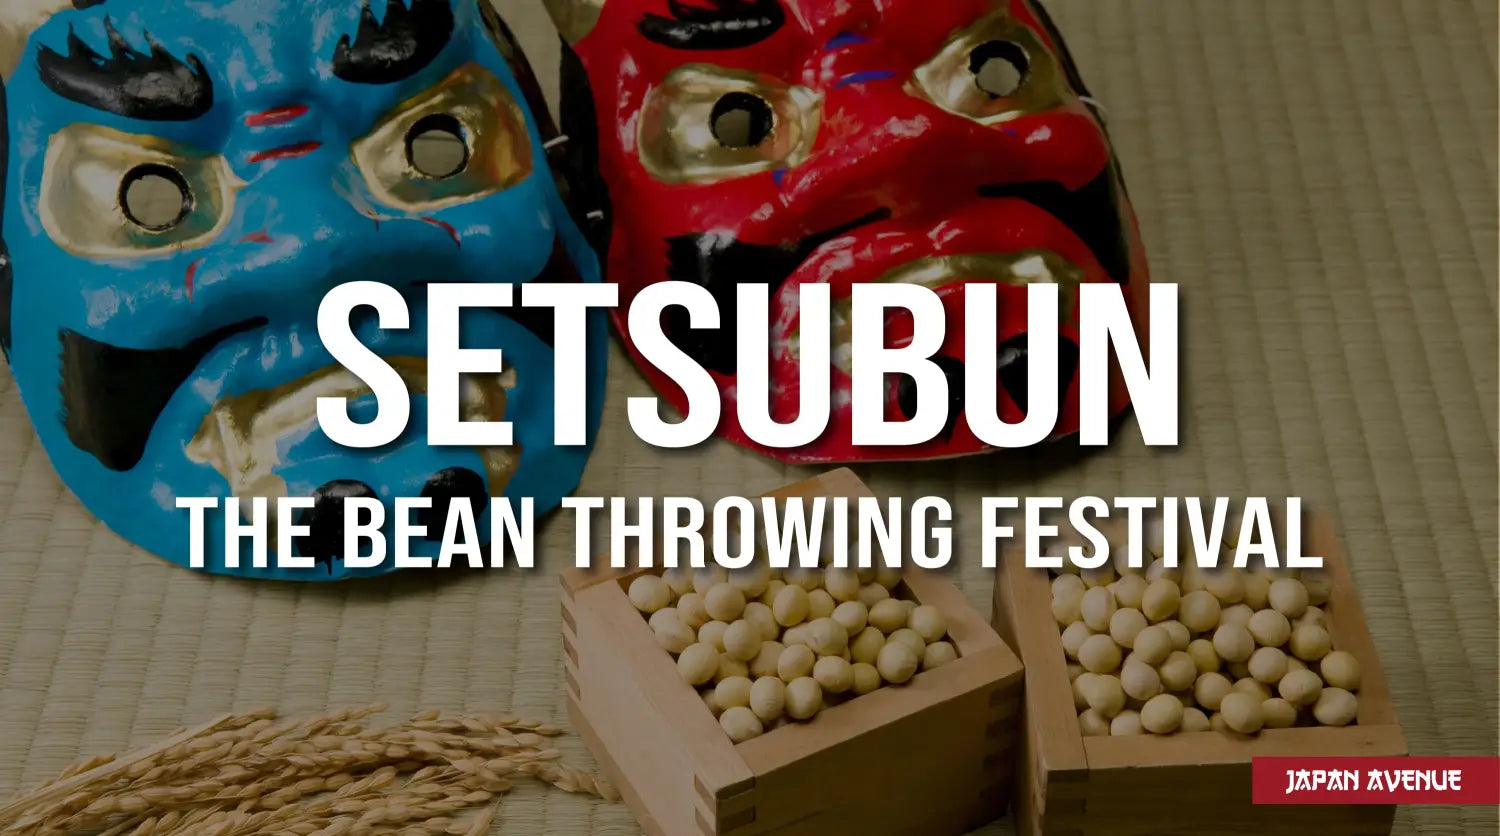 Setsubun, The Bean Throwing Festival